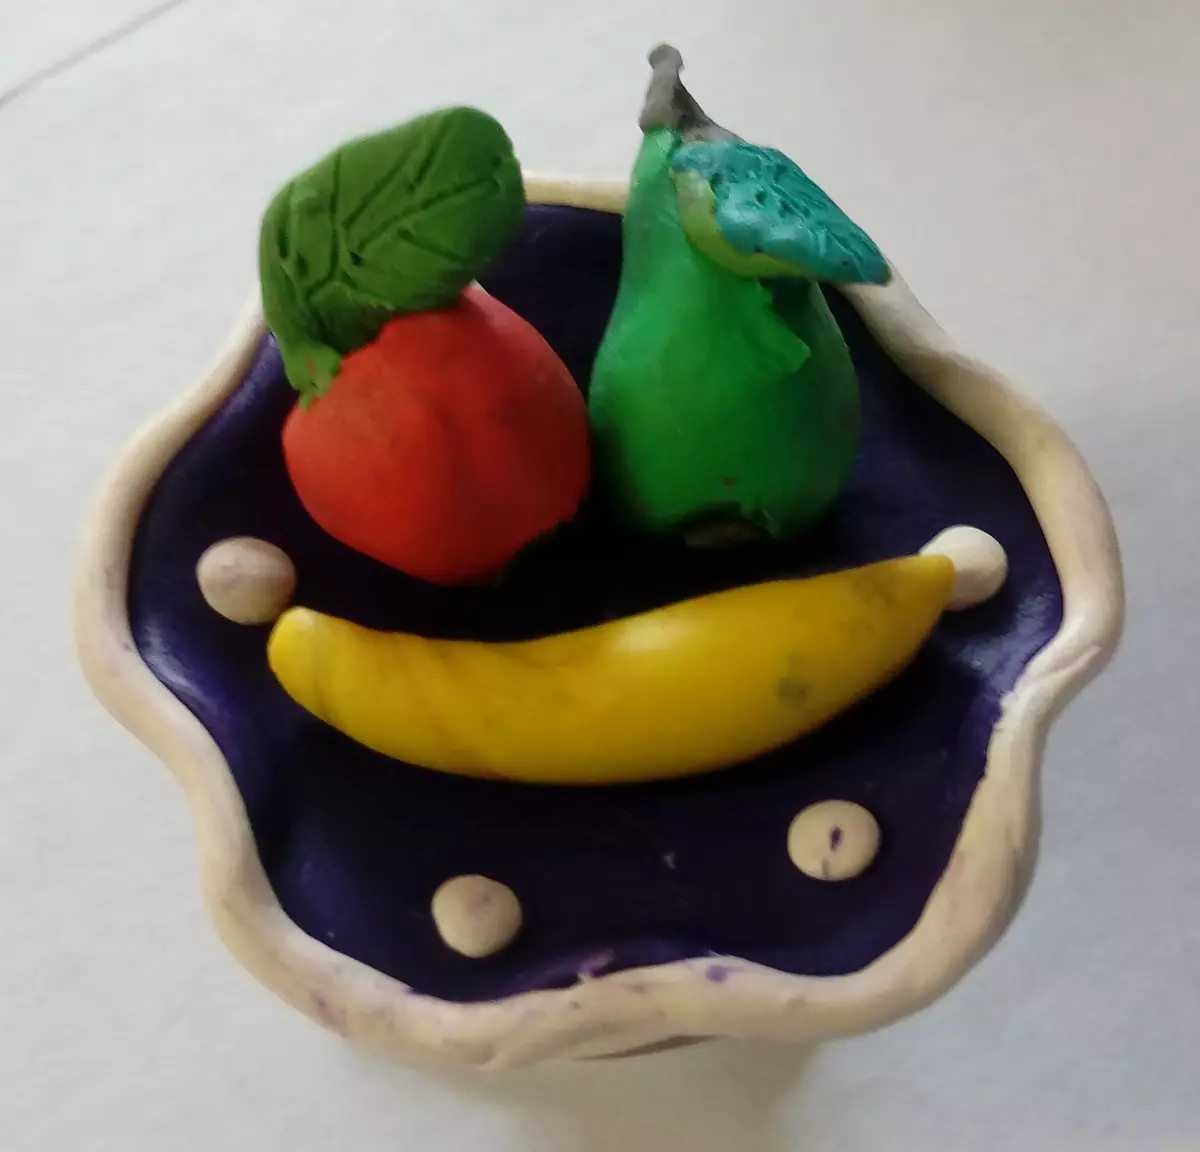 Fruits de plastilina (43 fotos): cistella de modelatge de fruites per a nens. Com esculpir el gerro amb fruites de plastilina lleugera? Què més pot fer? 27243_23